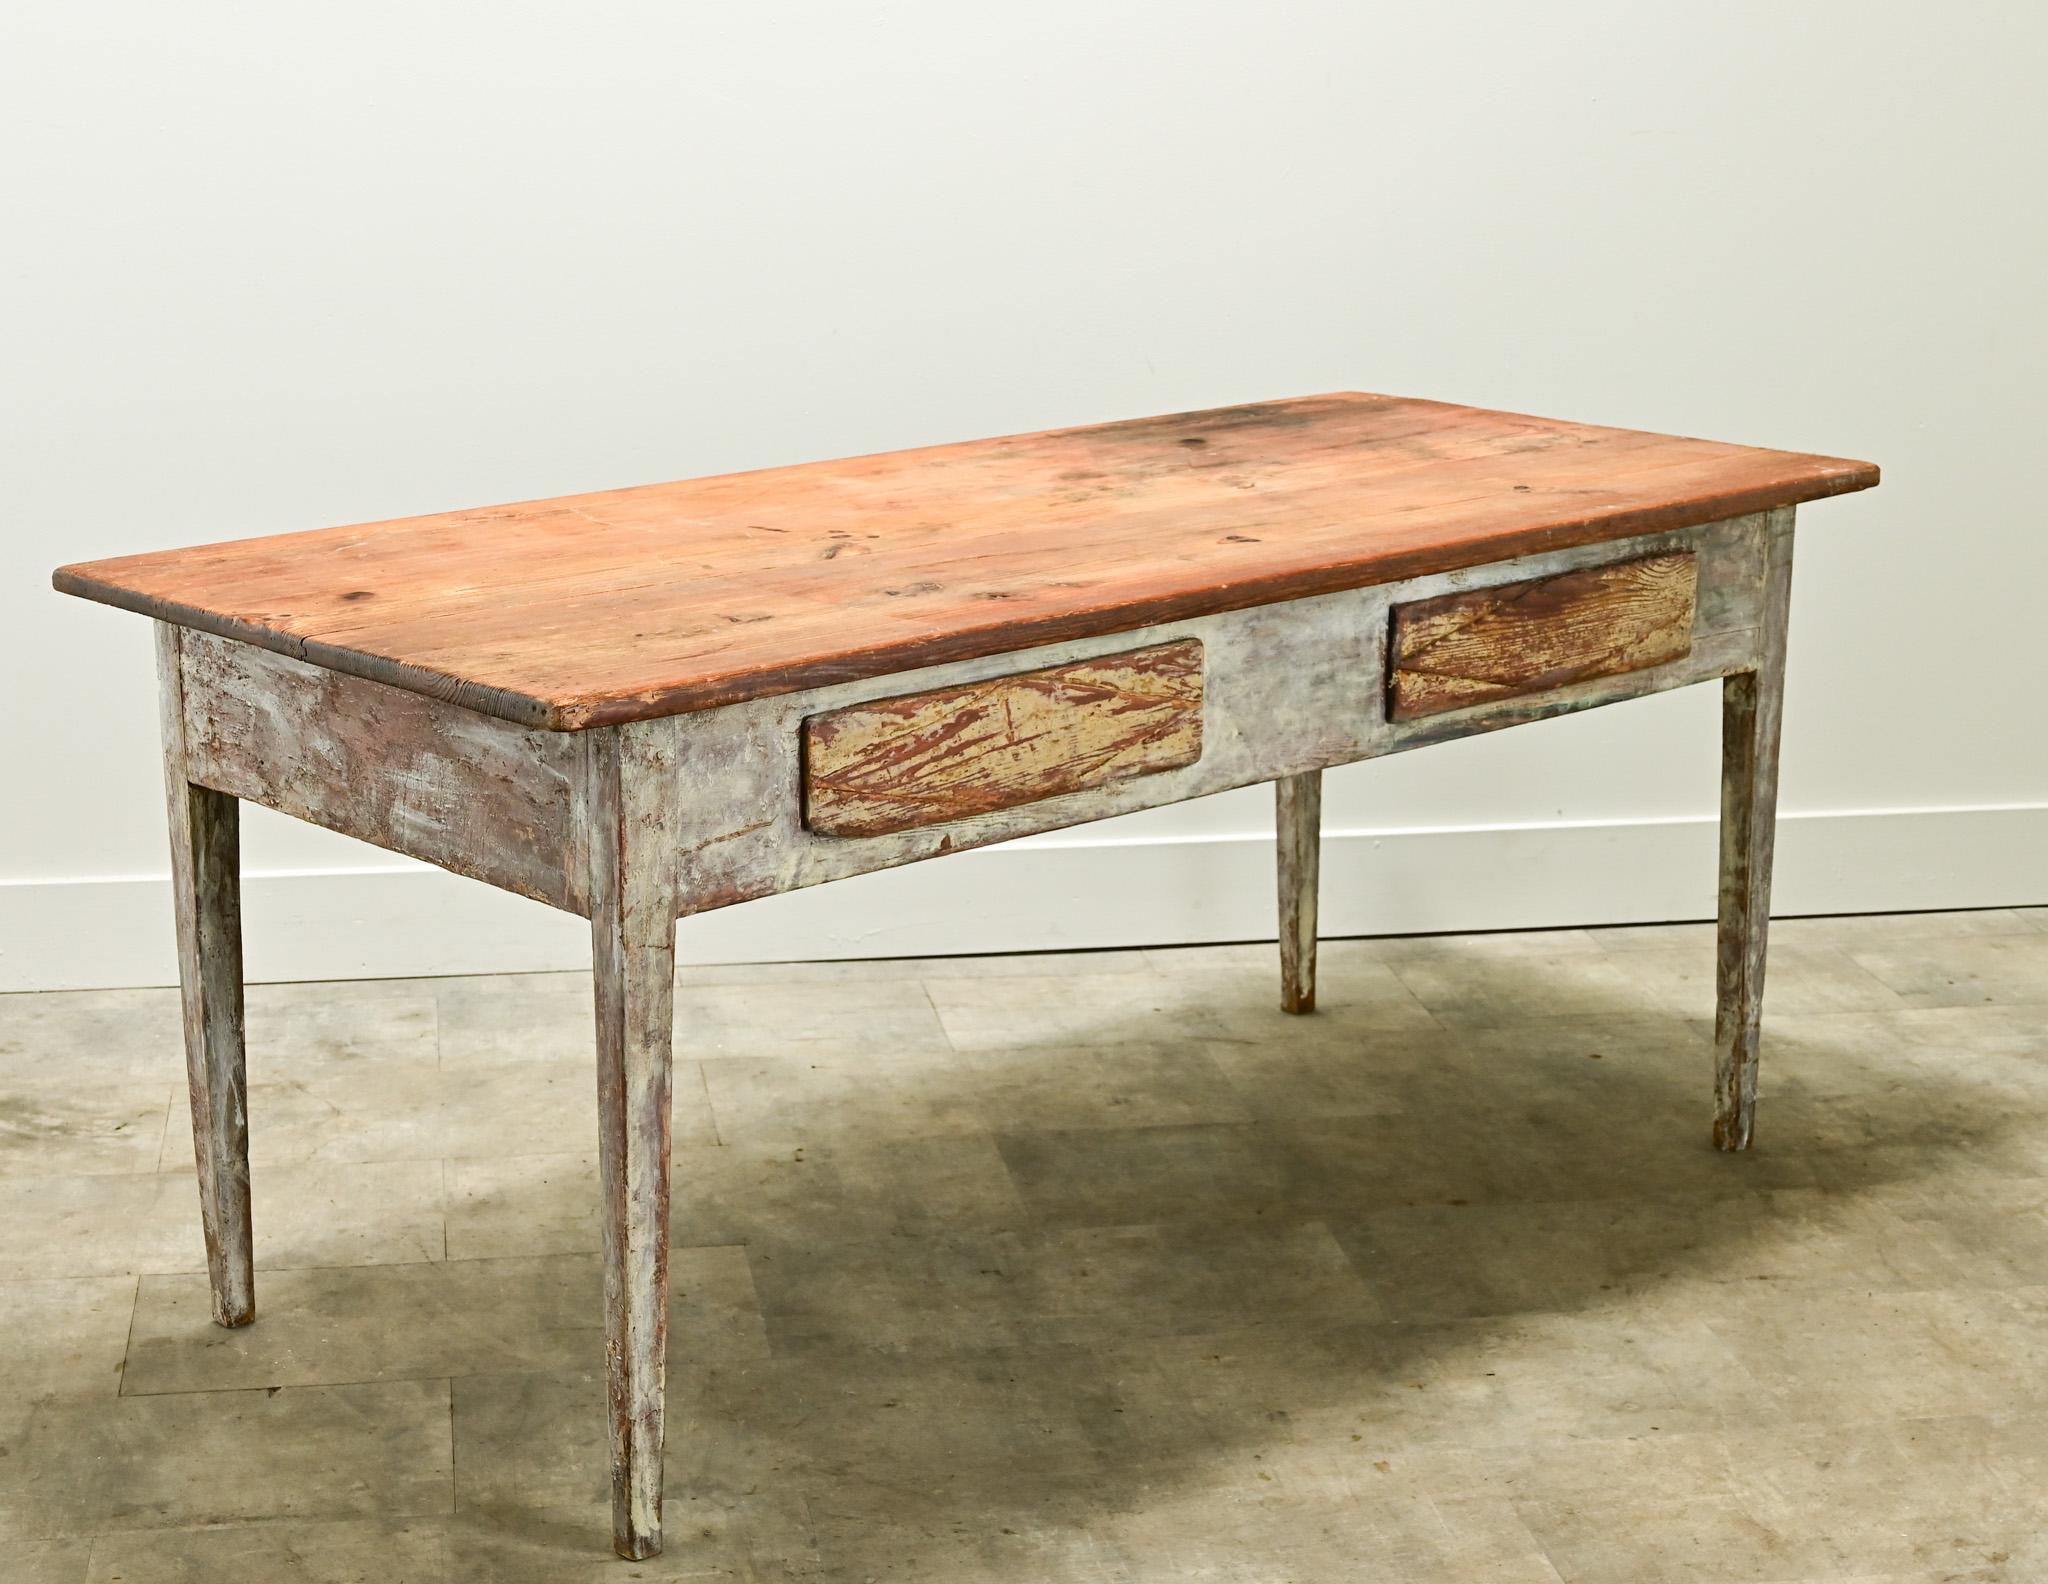 Ein rustikaler Tisch aus bemalter Gustavianischer Kiefer aus den 1820er Jahren, Schweden. Die Tischplatte aus gewachstem Kiefernholz ist abnehmbar und ruht auf dem abgenutzten, lackierten Sockel. Die Basis hat viele Schichten von Farbe und wurde vor